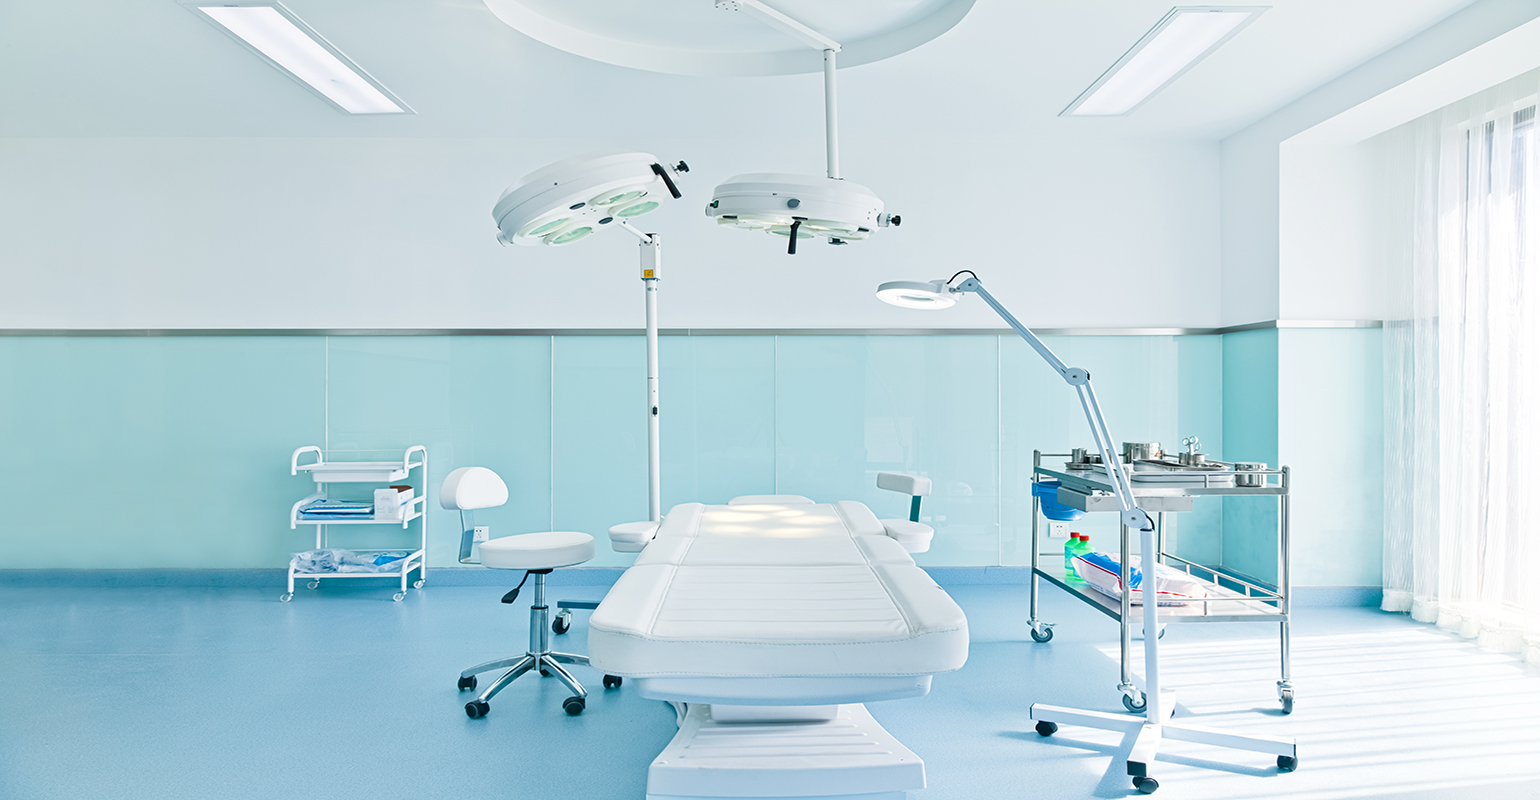 Modular operating rooms